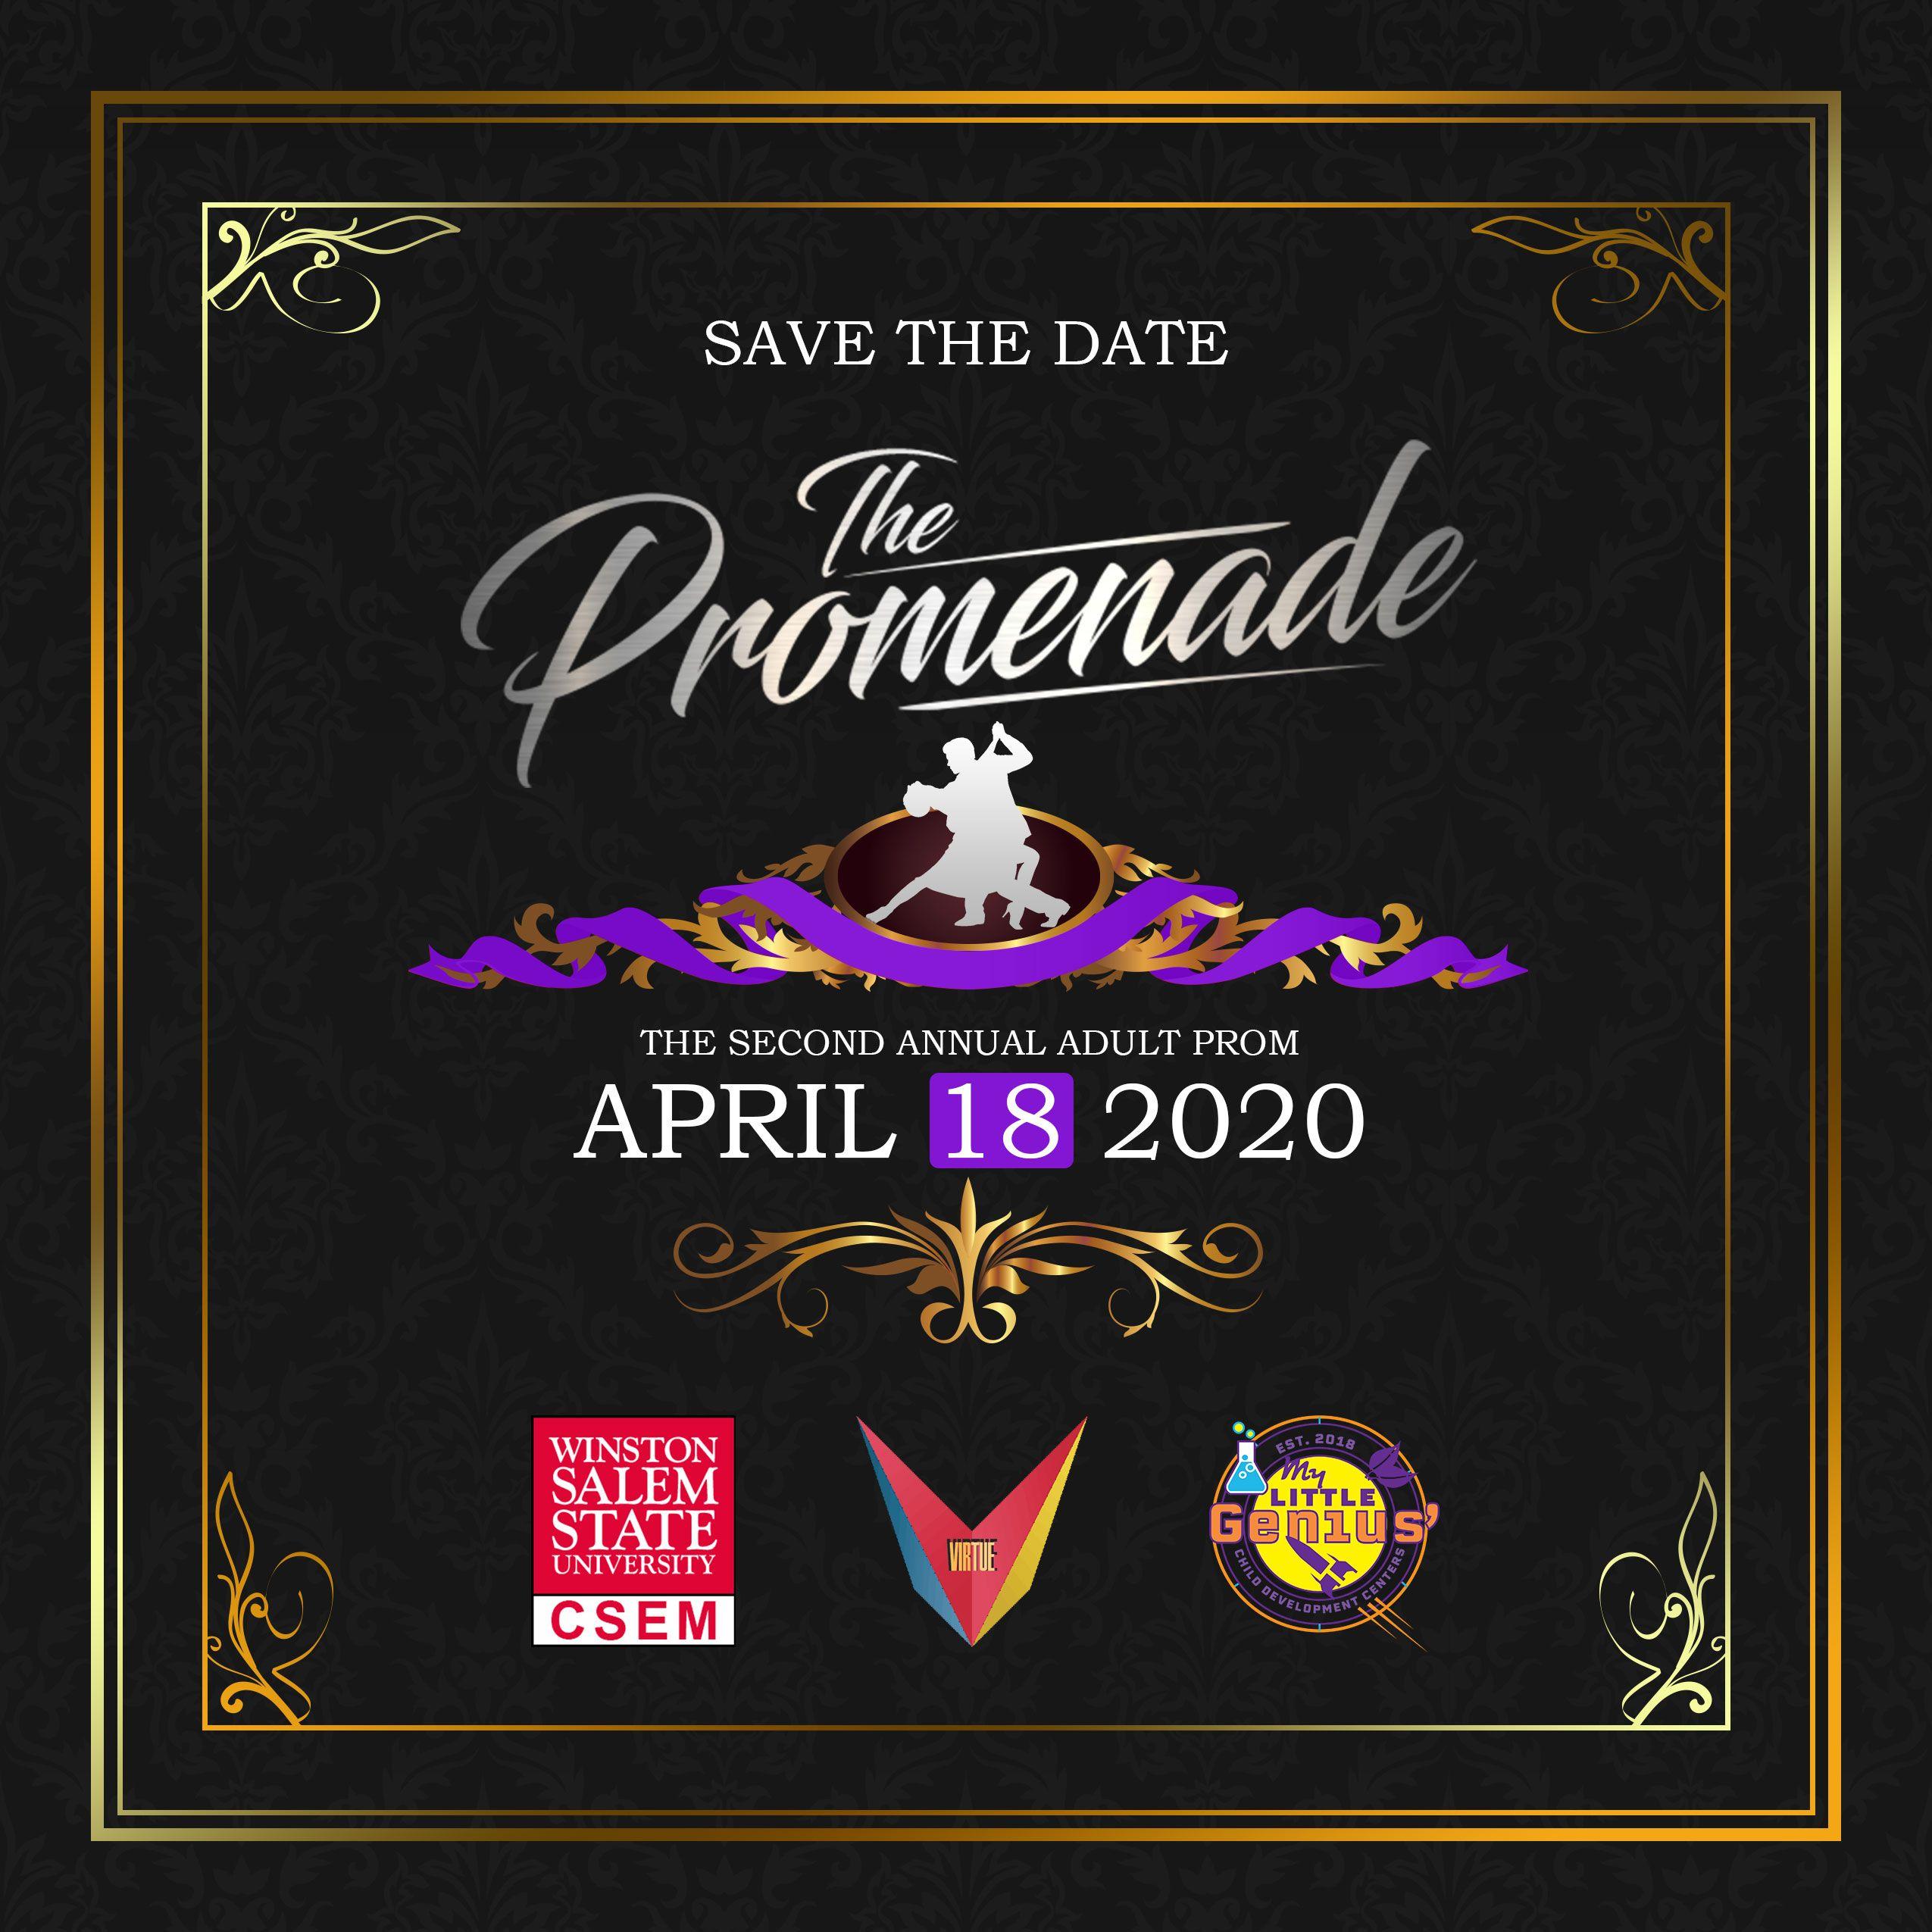 Promenade Logo - The Promenade Prom